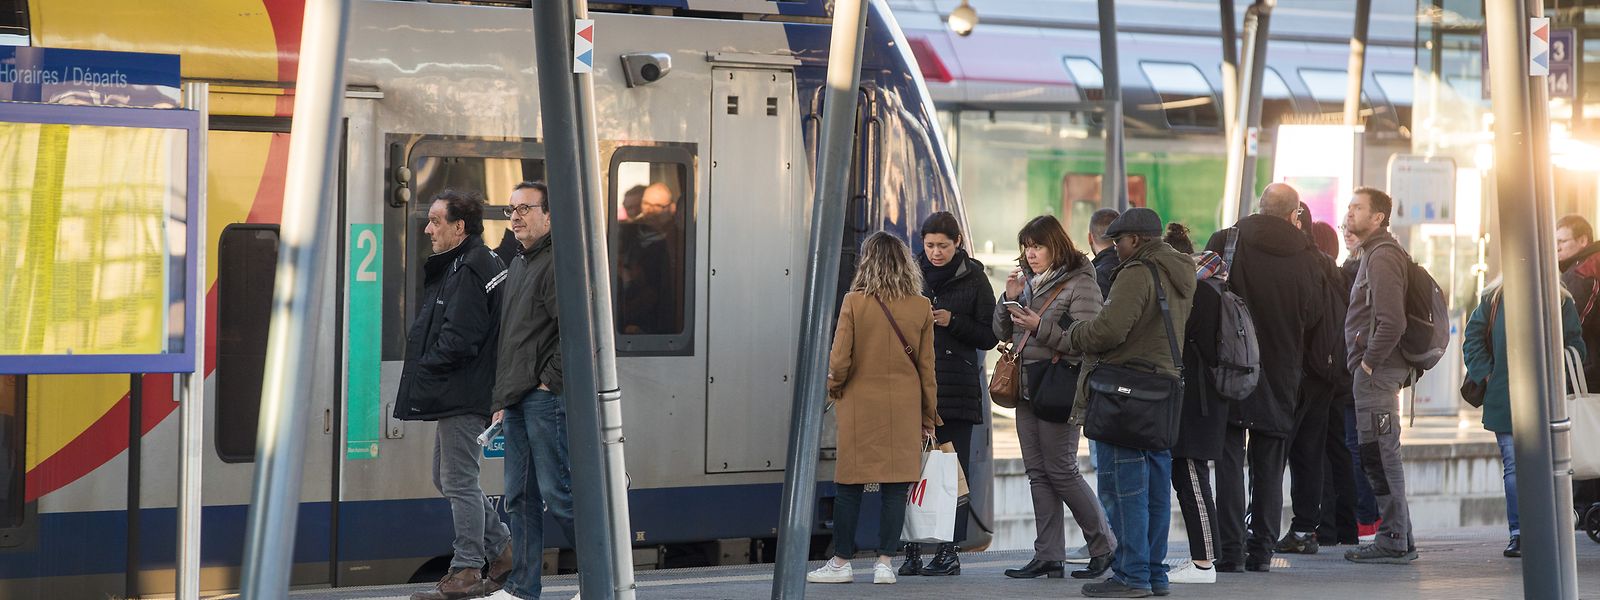 Chaque jour, 12.000 usagers empruntent les lignes TER en Lorraine et Luxembourg.